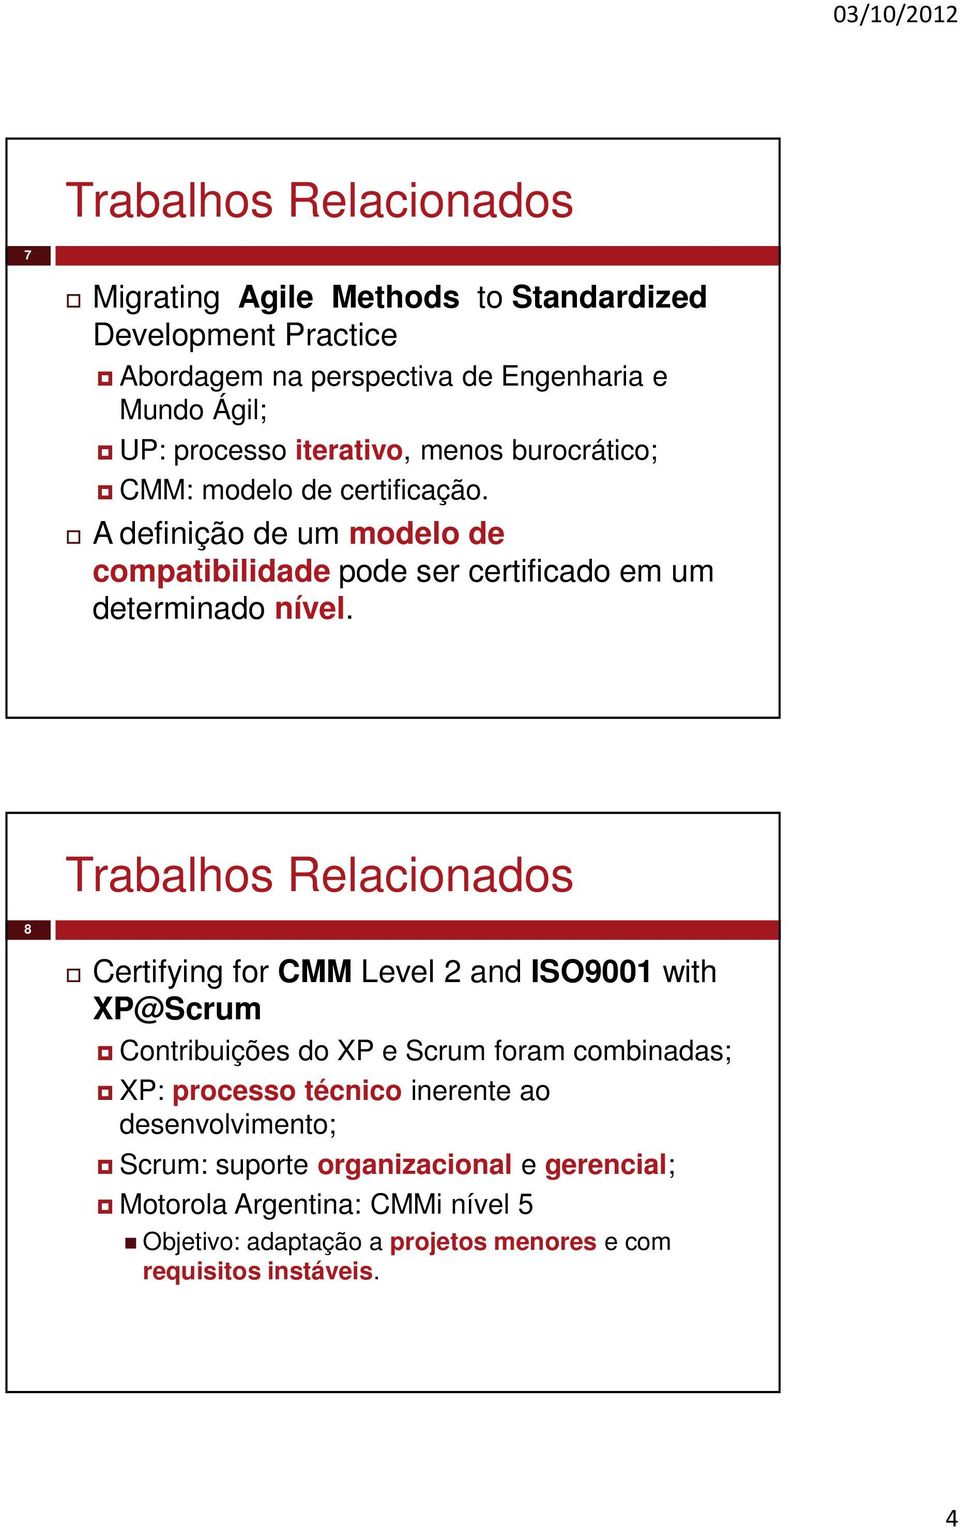 Trabalhos Relacionados 8 Certifying for CMM Level 2 and ISO9001 with XP@Scrum Contribuições do XP e Scrum foram combinadas; XP: processo técnico inerente